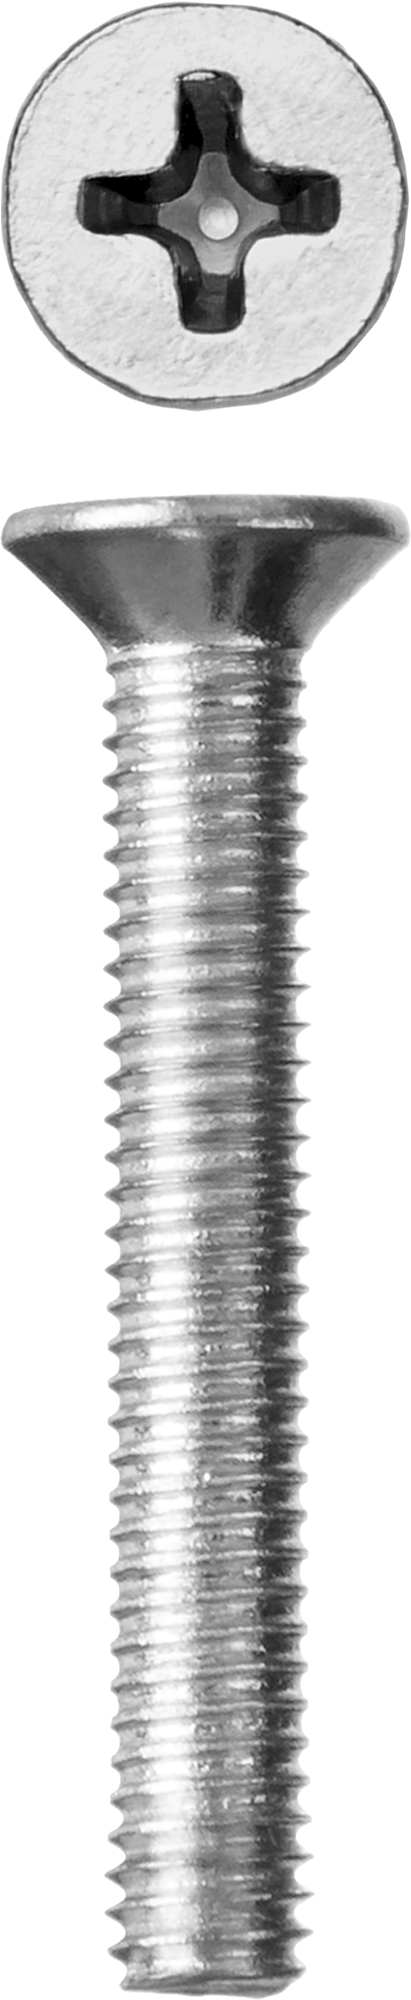 Винт с потайной головкой Зубр 303116-06-030, М6, 3 см, 965 DIN, 6 мм, оцинкованная сталь, 7 шт., фасовка (303116-06-030)